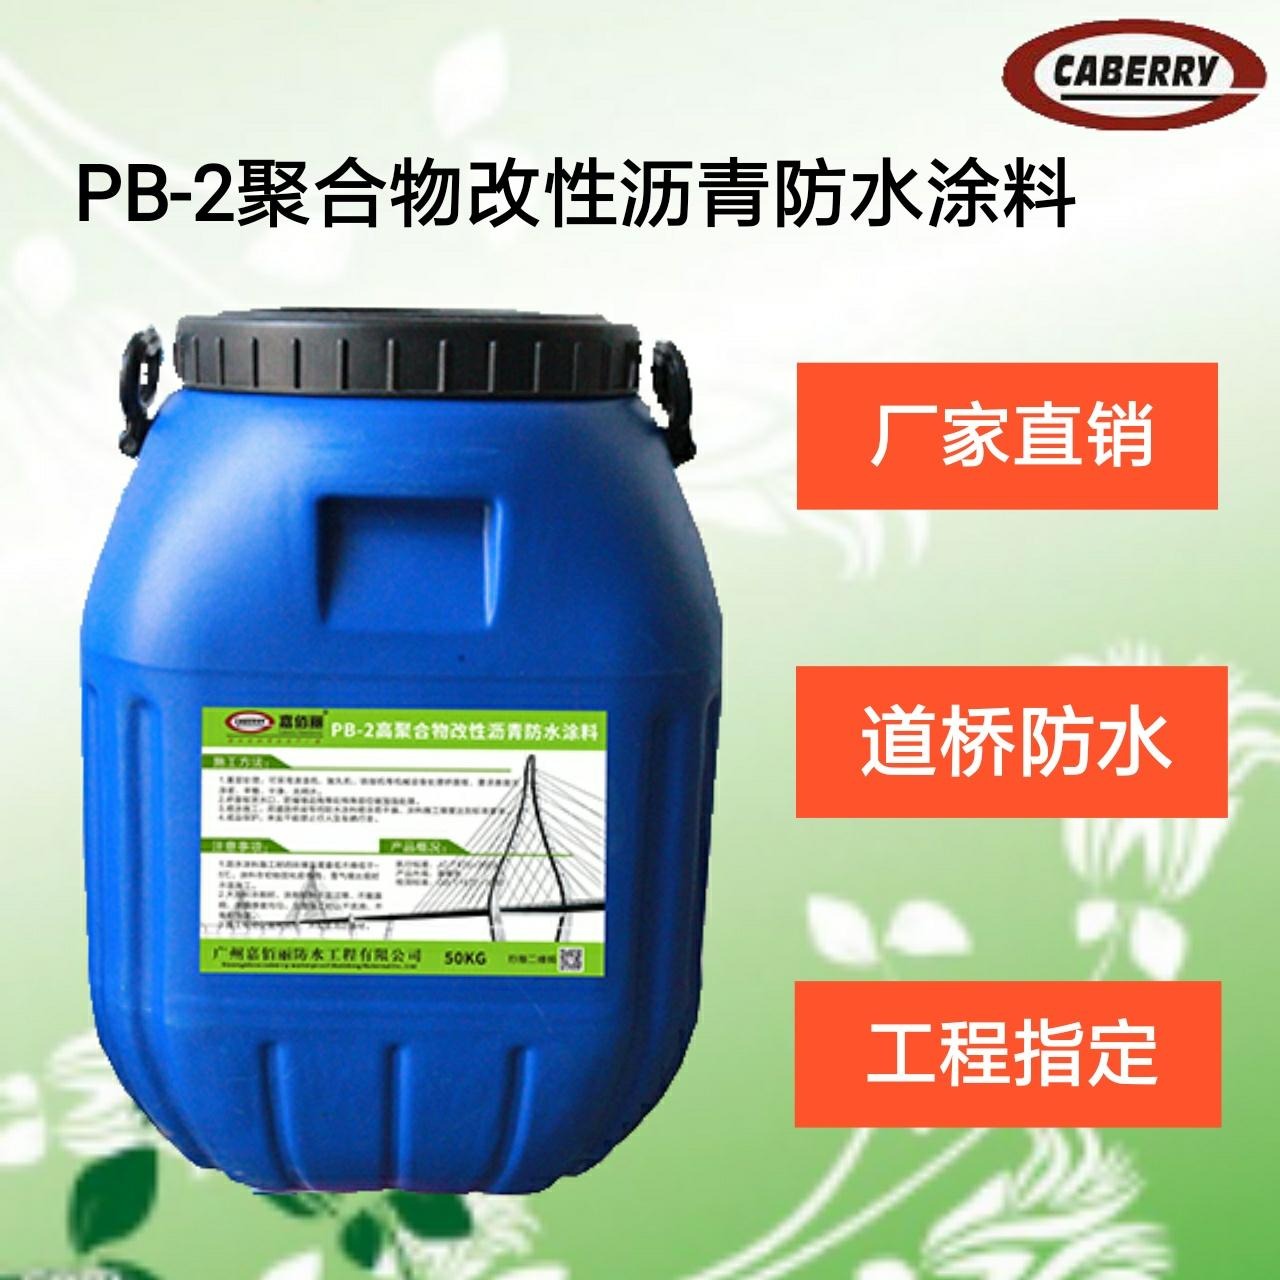 供应 路桥专用 PB-2聚合物改性沥青防水涂料 不限量发货